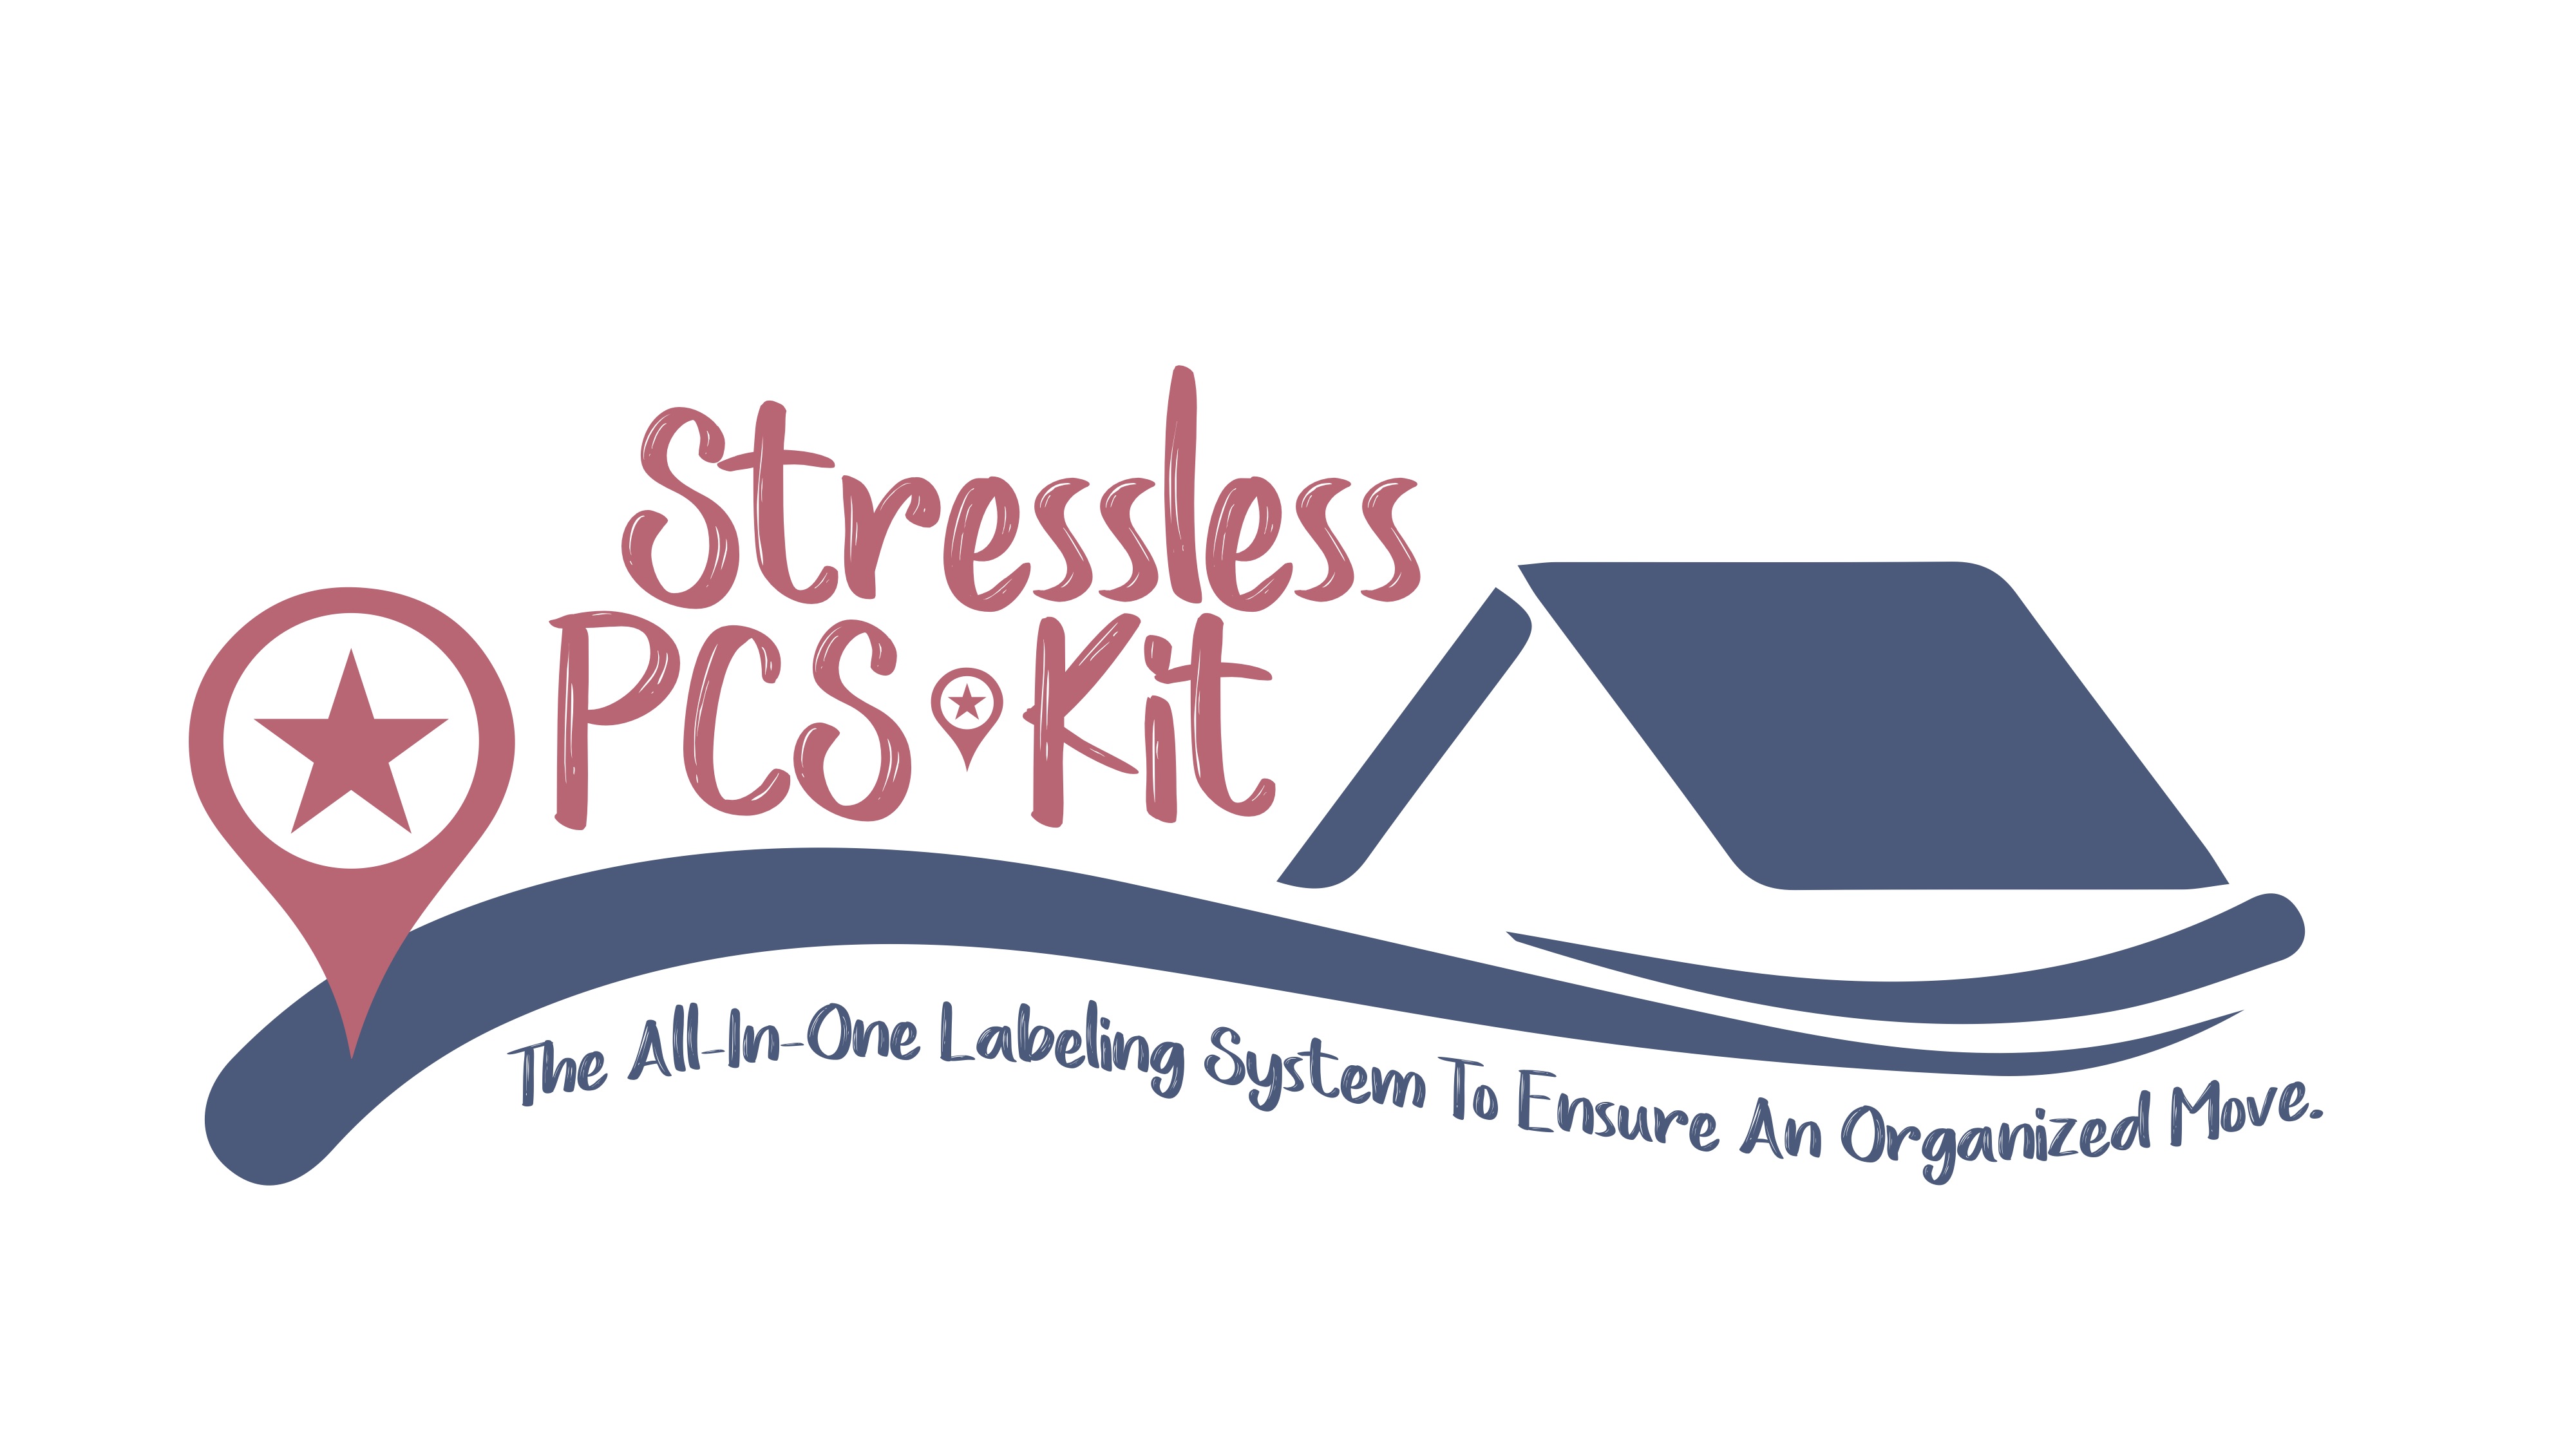 www.stresslesspcskit.com 